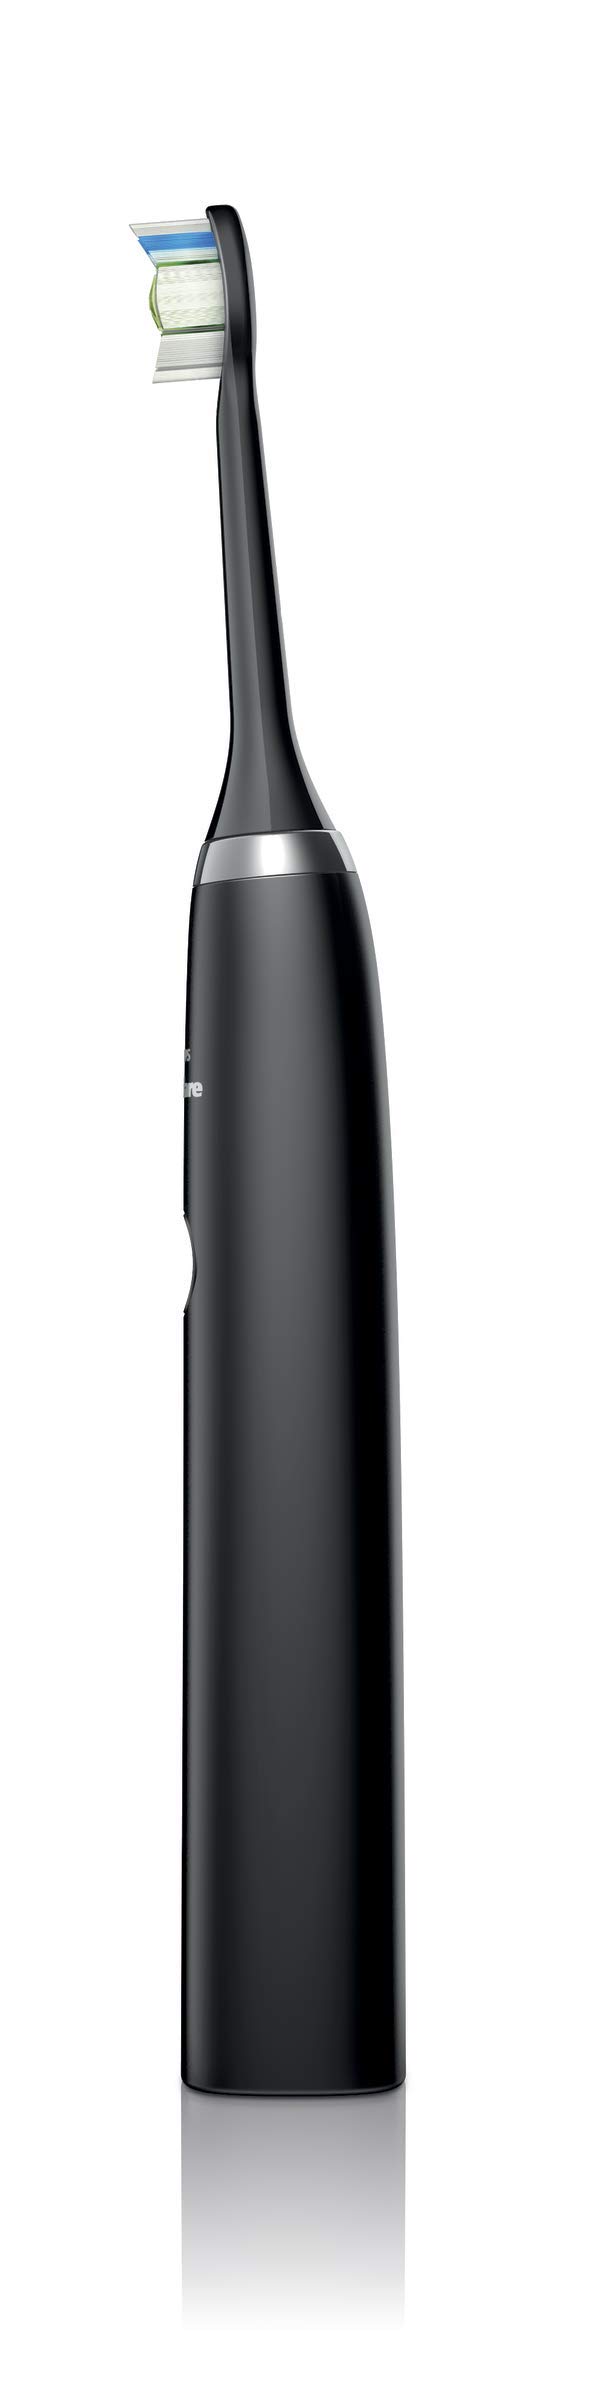 แปรงสีฟัน PHILIPS SONICARE DiamondClean Sonic Electric Rechargeable Sonic Toothbrush HX9352 Black